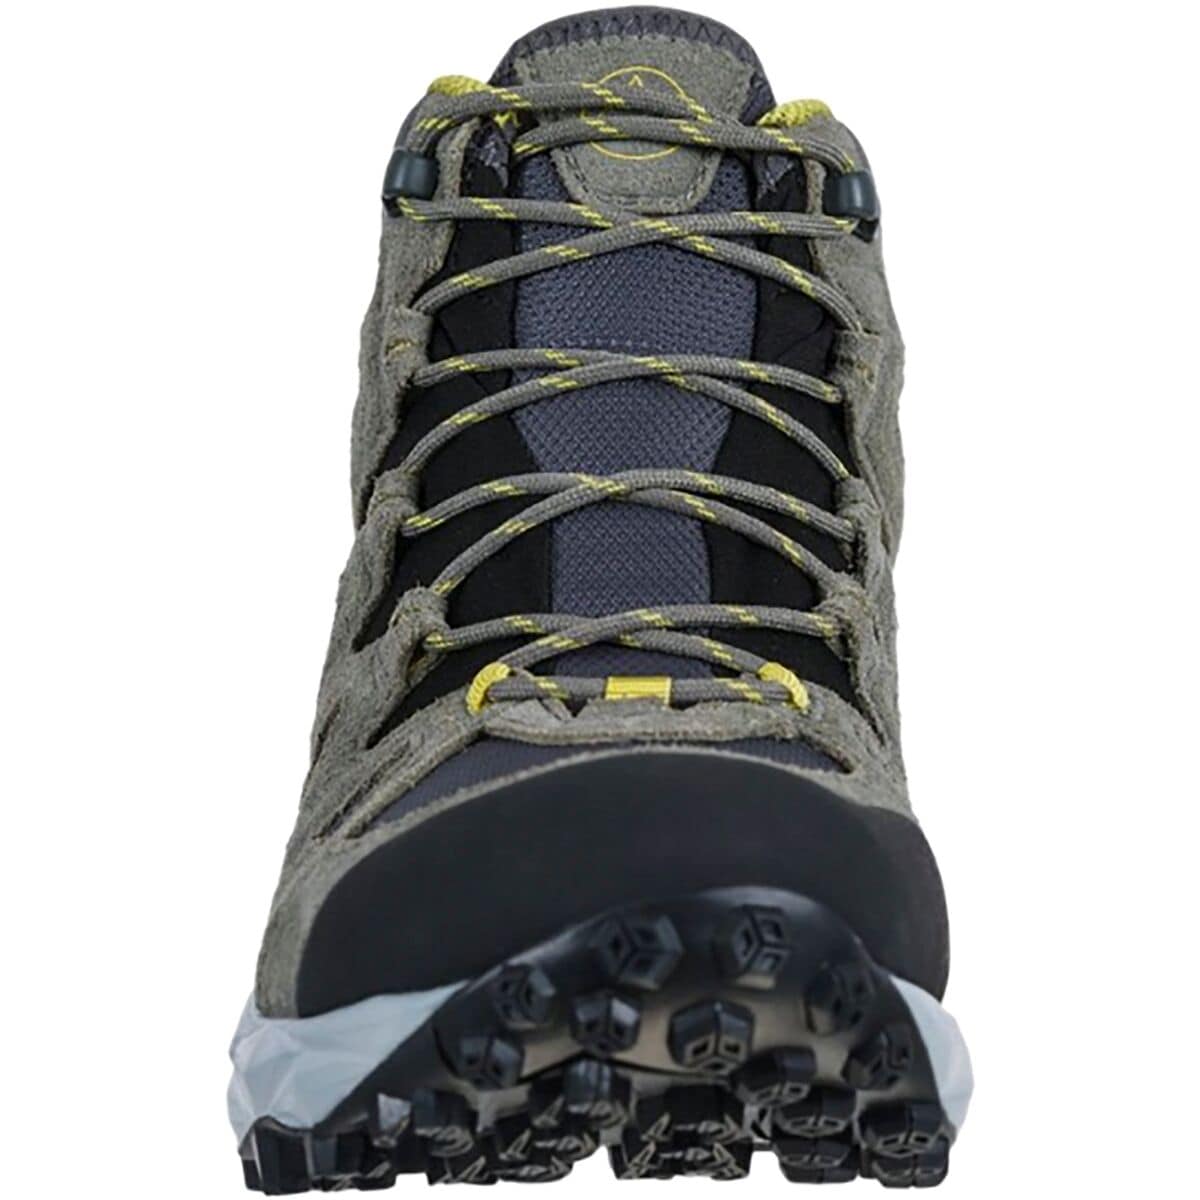 La Sportiva Saber GTX Hiking Boot - Women's - Footwear